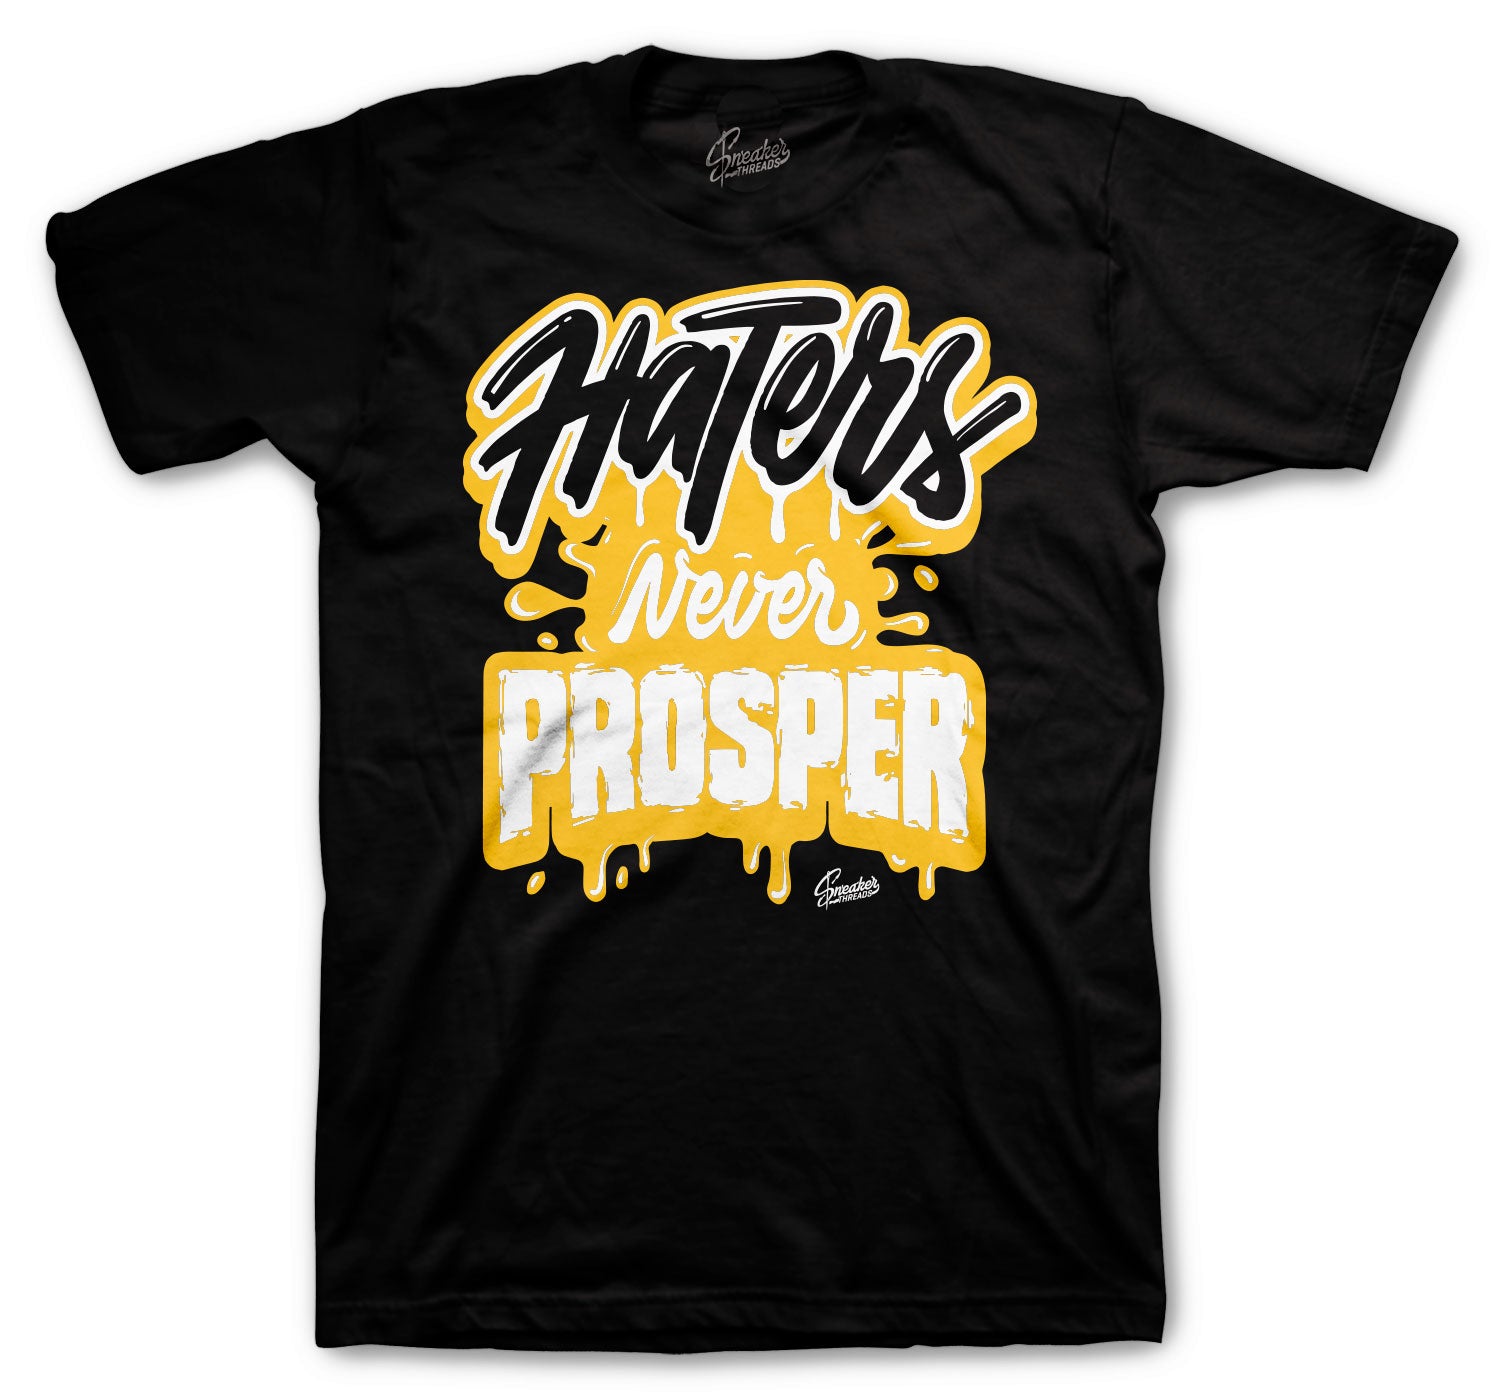 Retro 1 Pollen Shirt - Never Prosper - Black